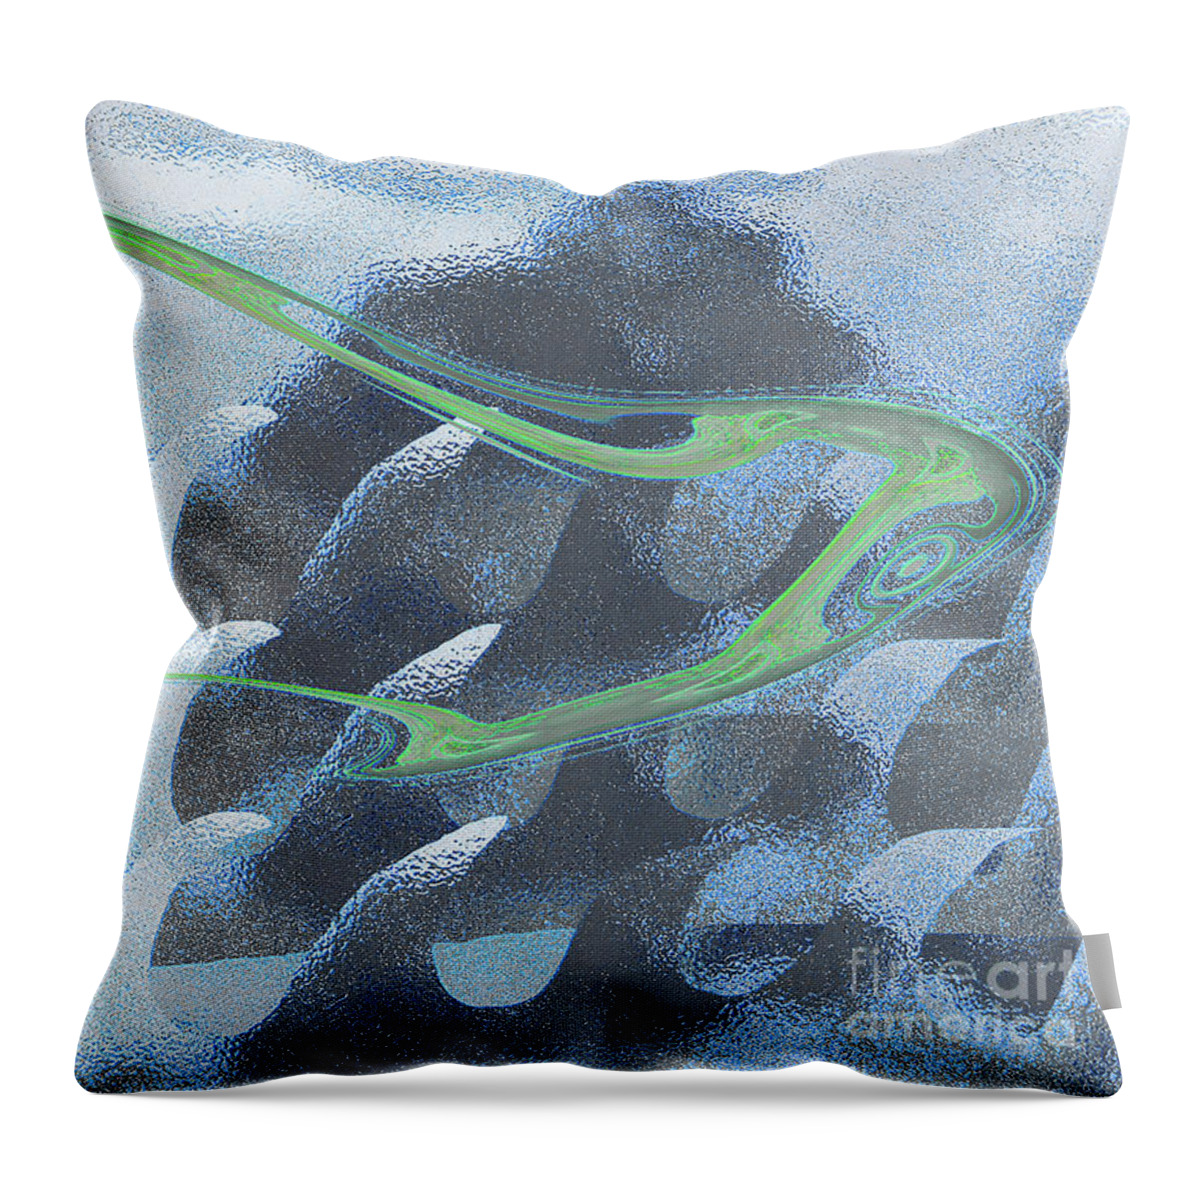 Sea Throw Pillow featuring the digital art Mist by Alexandra Vusir